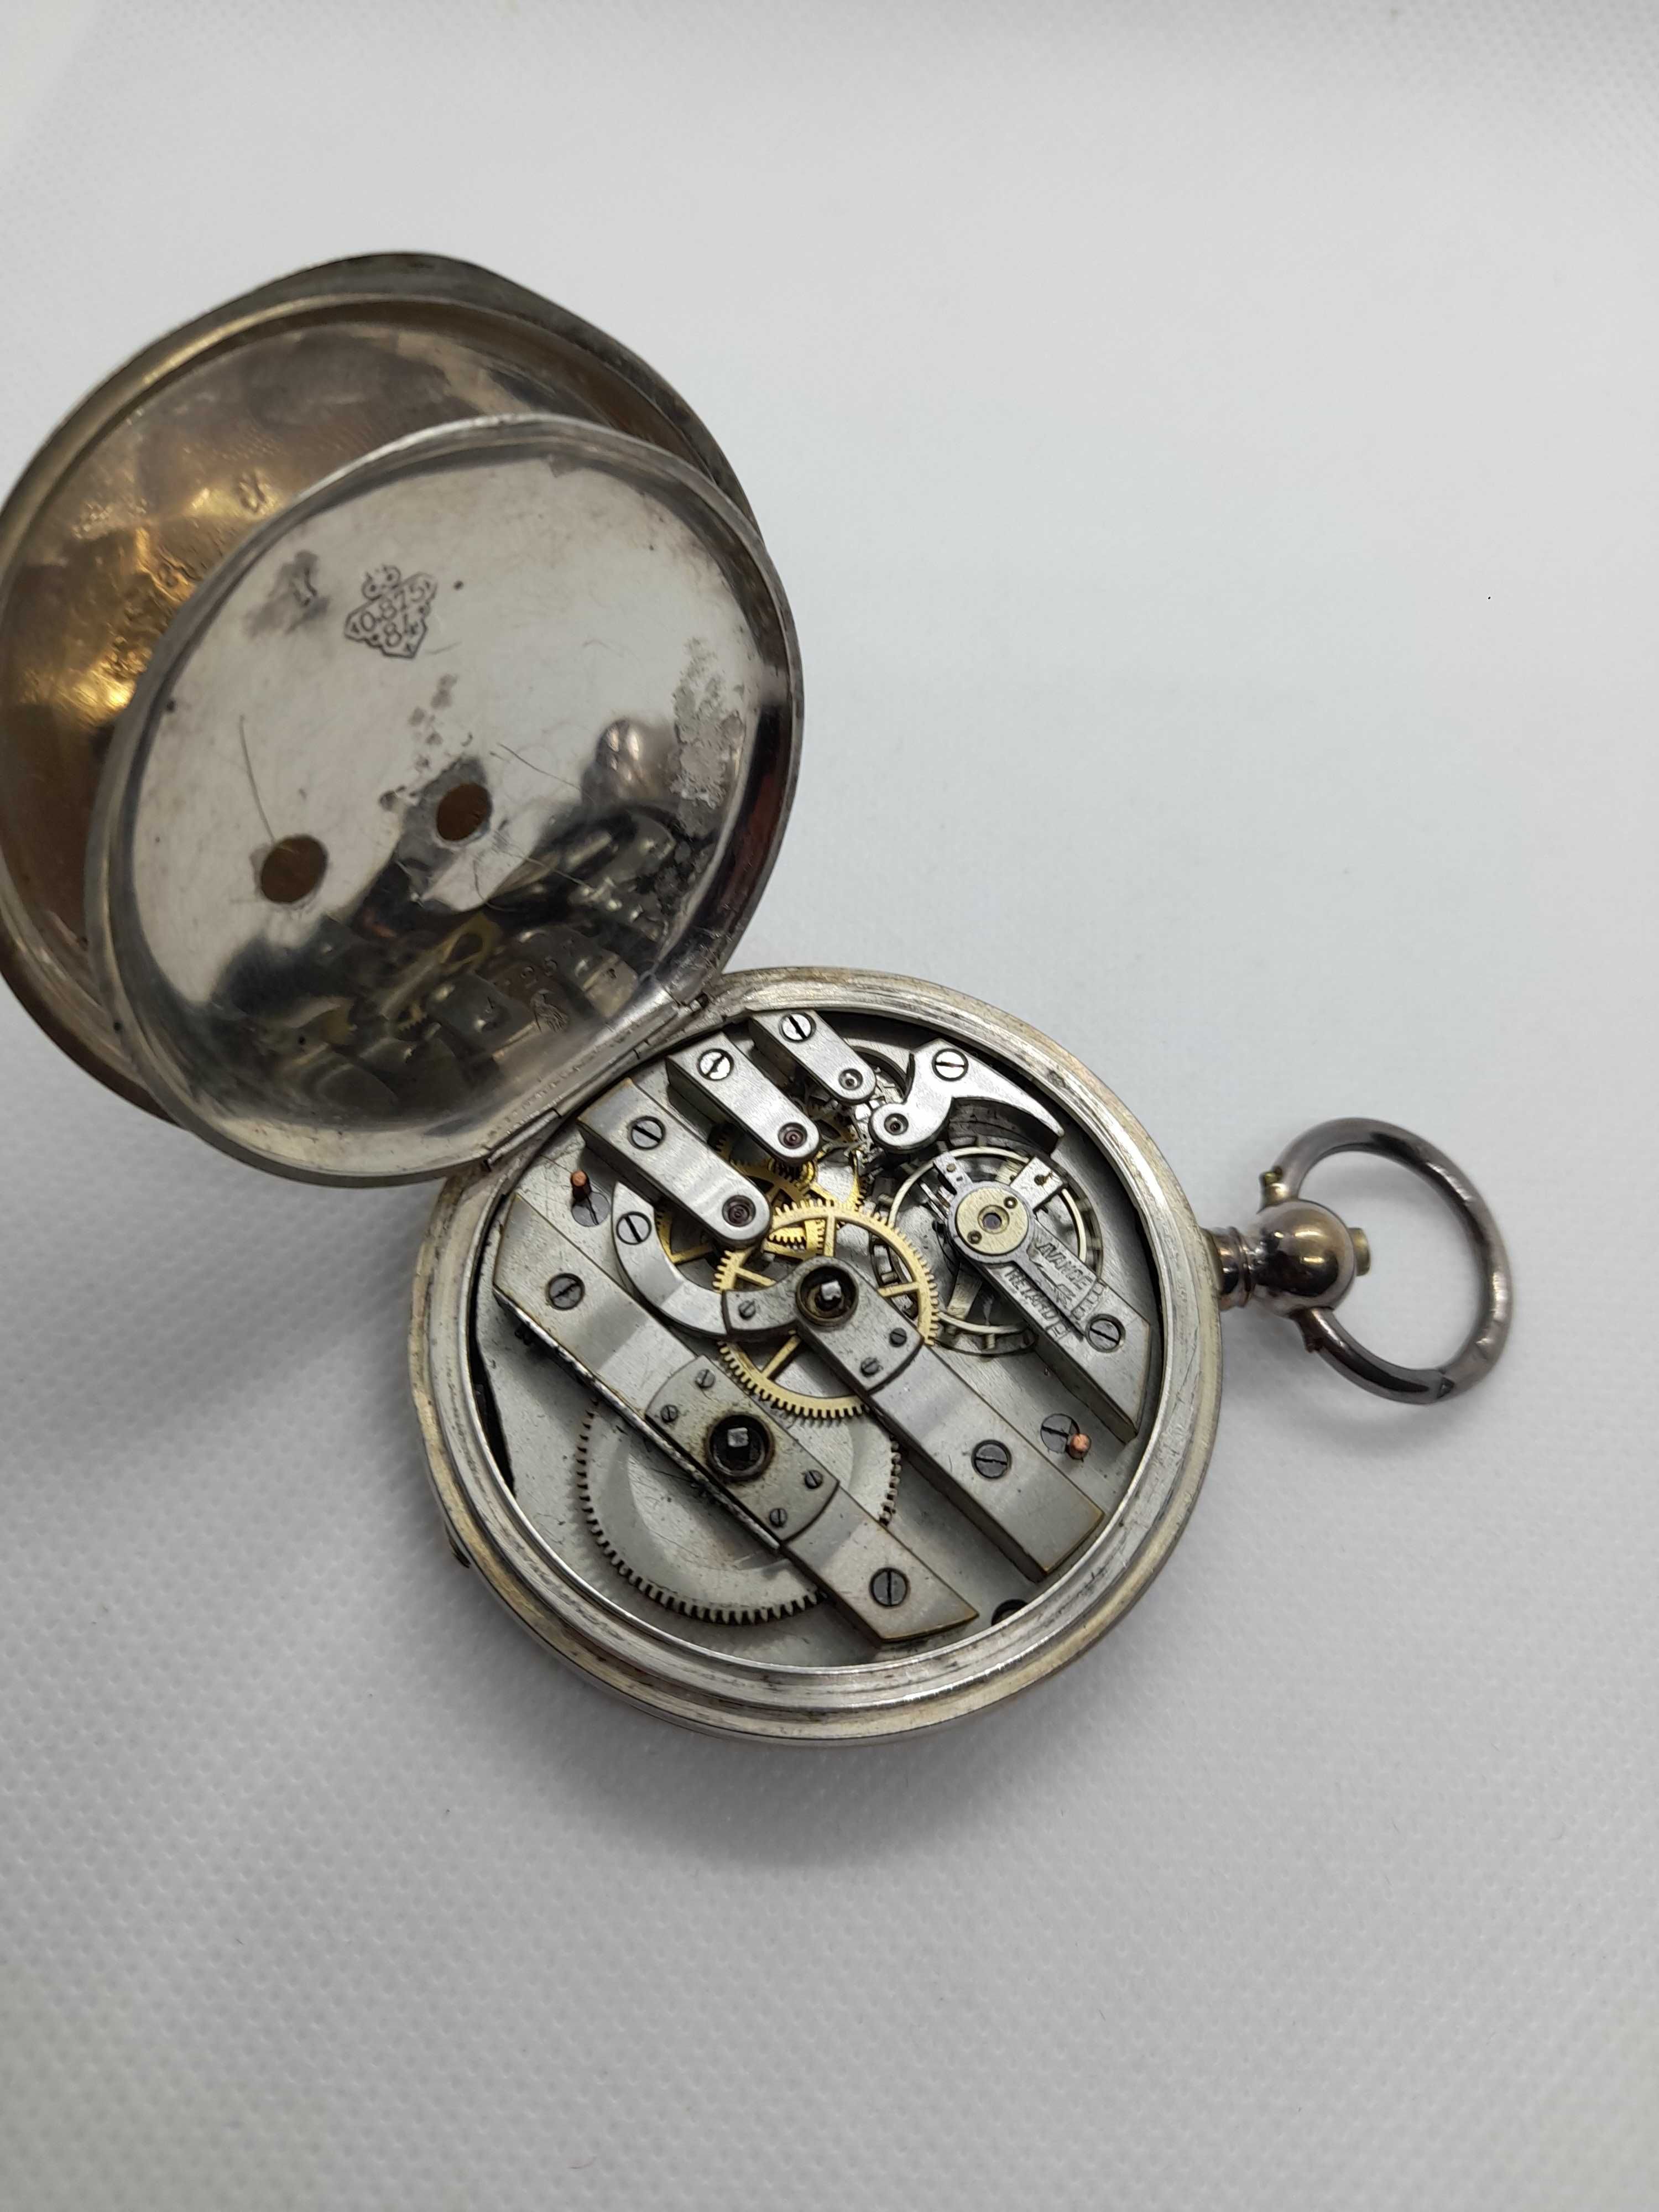 Zegarek srebro kieszonkowy Tobias lX wiek